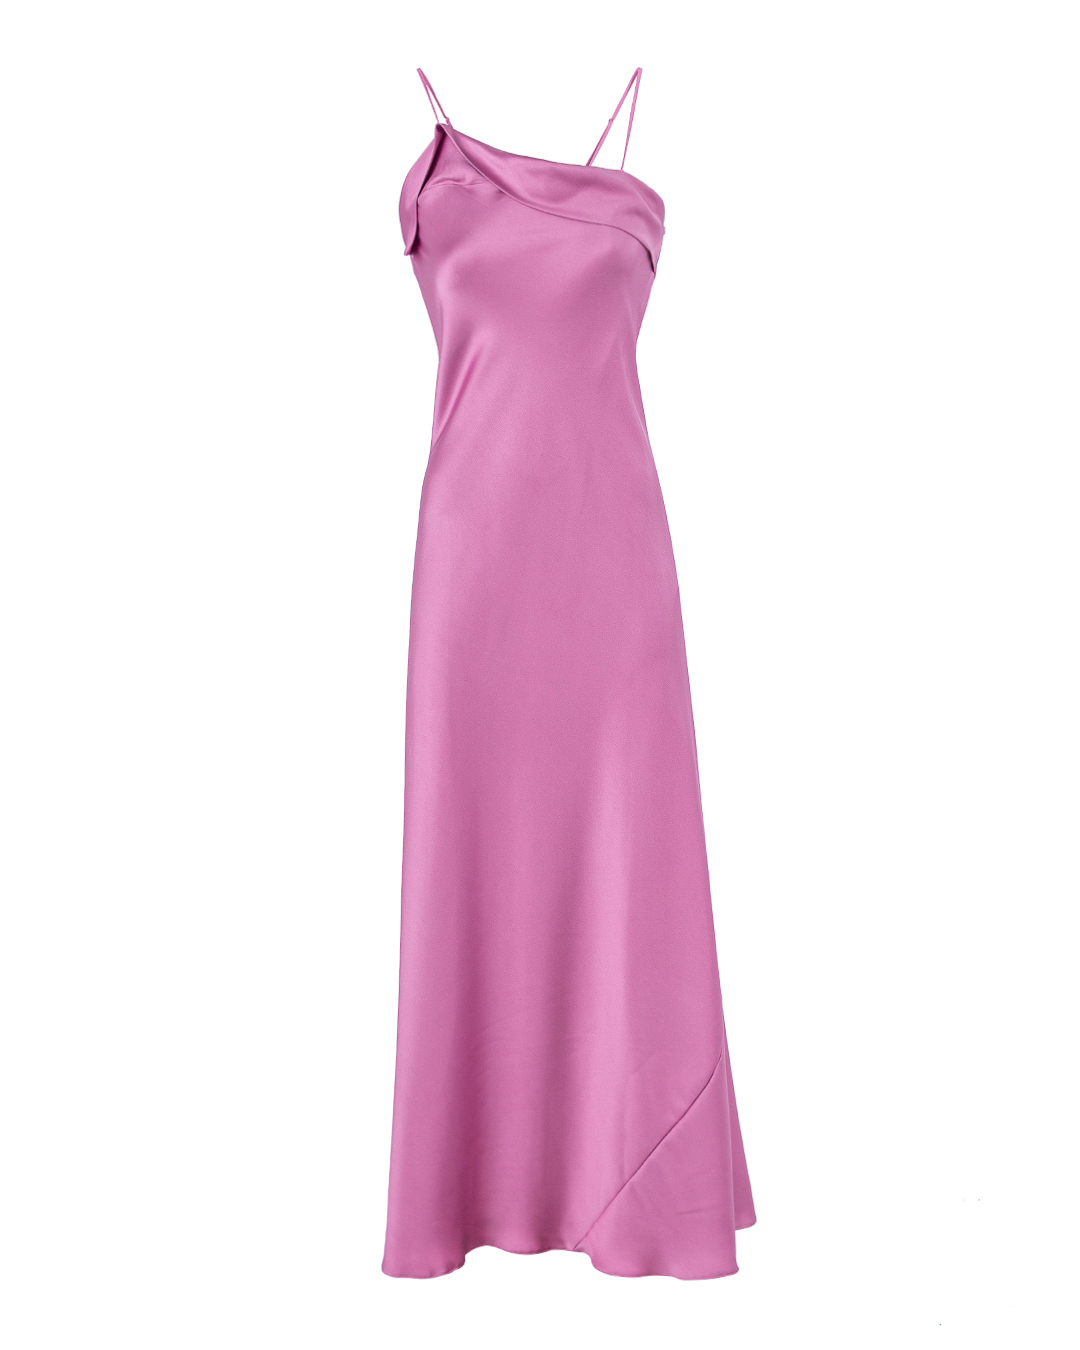 платье ACTUALEE 003843 розовый 42, размер 42 - фото 1